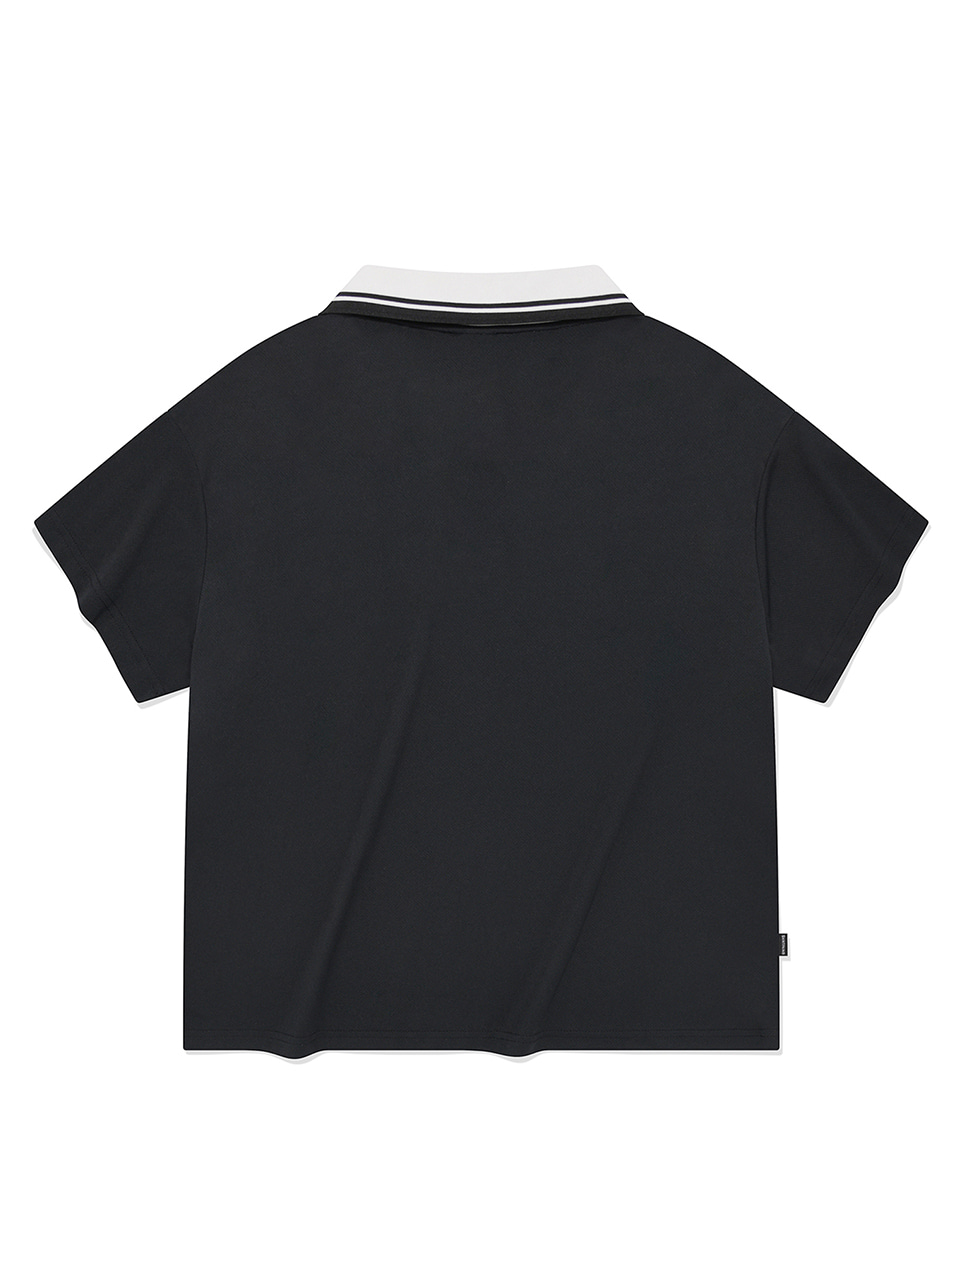 SP 하트 엠블럼 로고 라인 카라 티셔츠-블랙